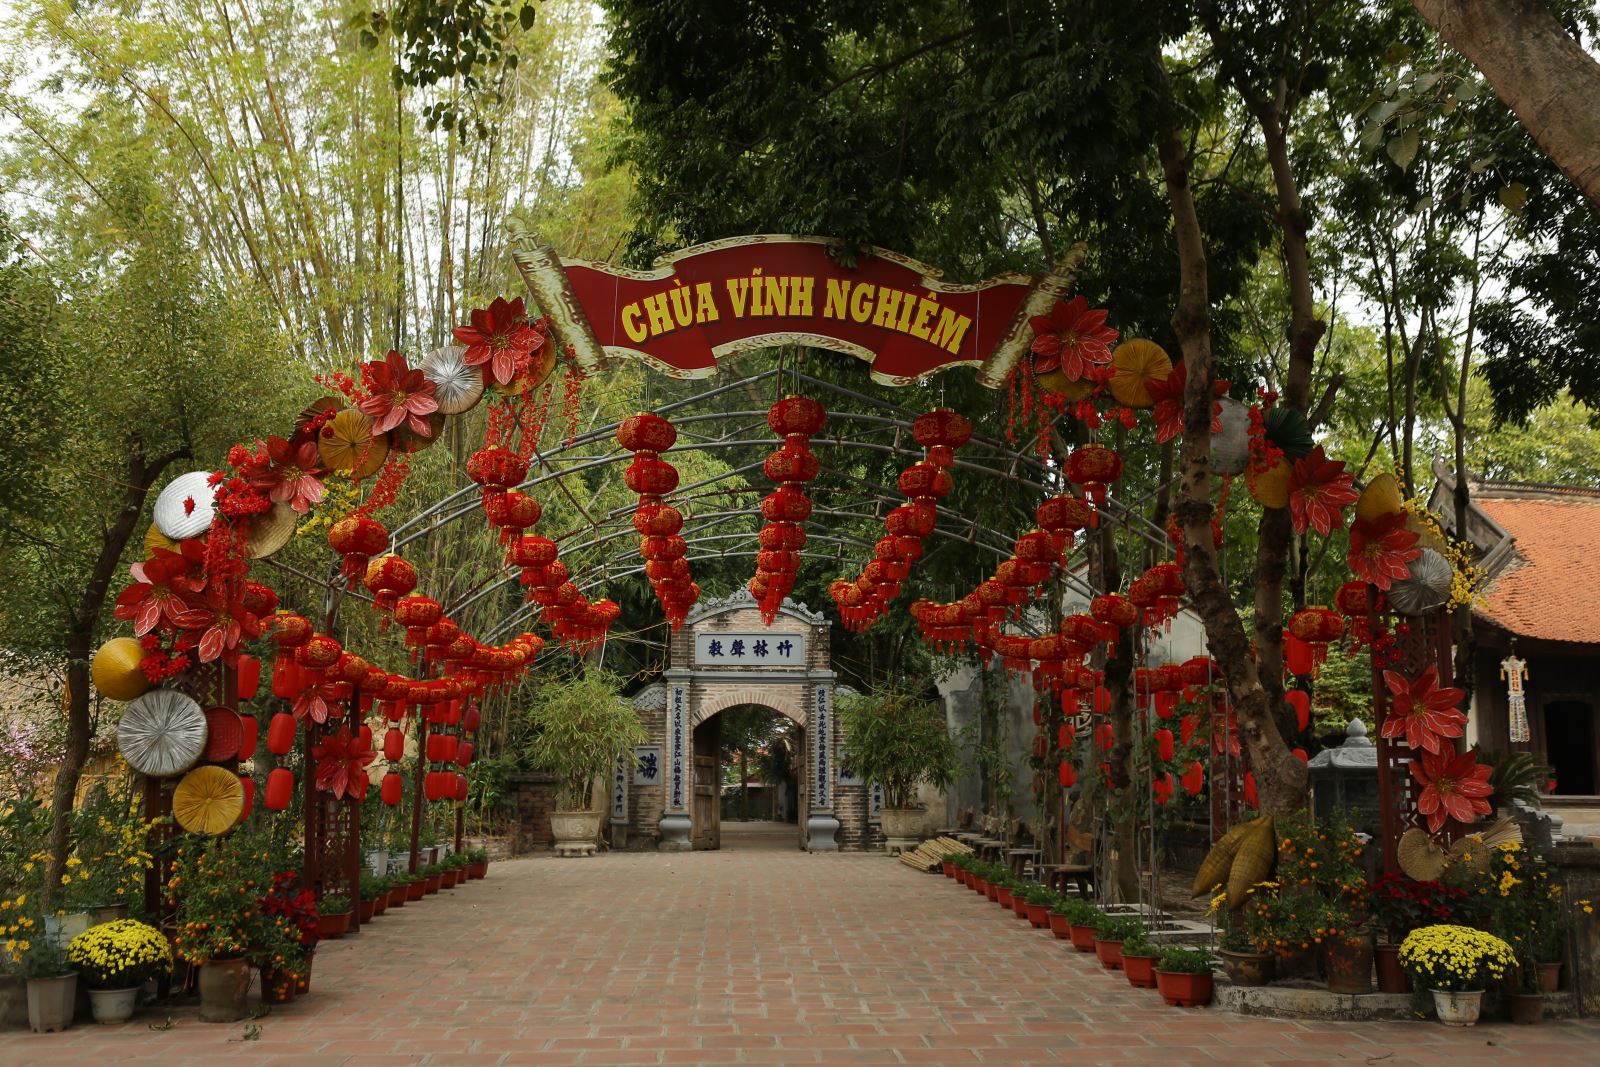 Trải qua hơn 700 năm hình thành, chùa Vĩnh Nghiêm vẫn được bảo tồn nguyên vẹn, trở thành chốn văn hóa tâm linh linh thiêng ở Bắc Giang.